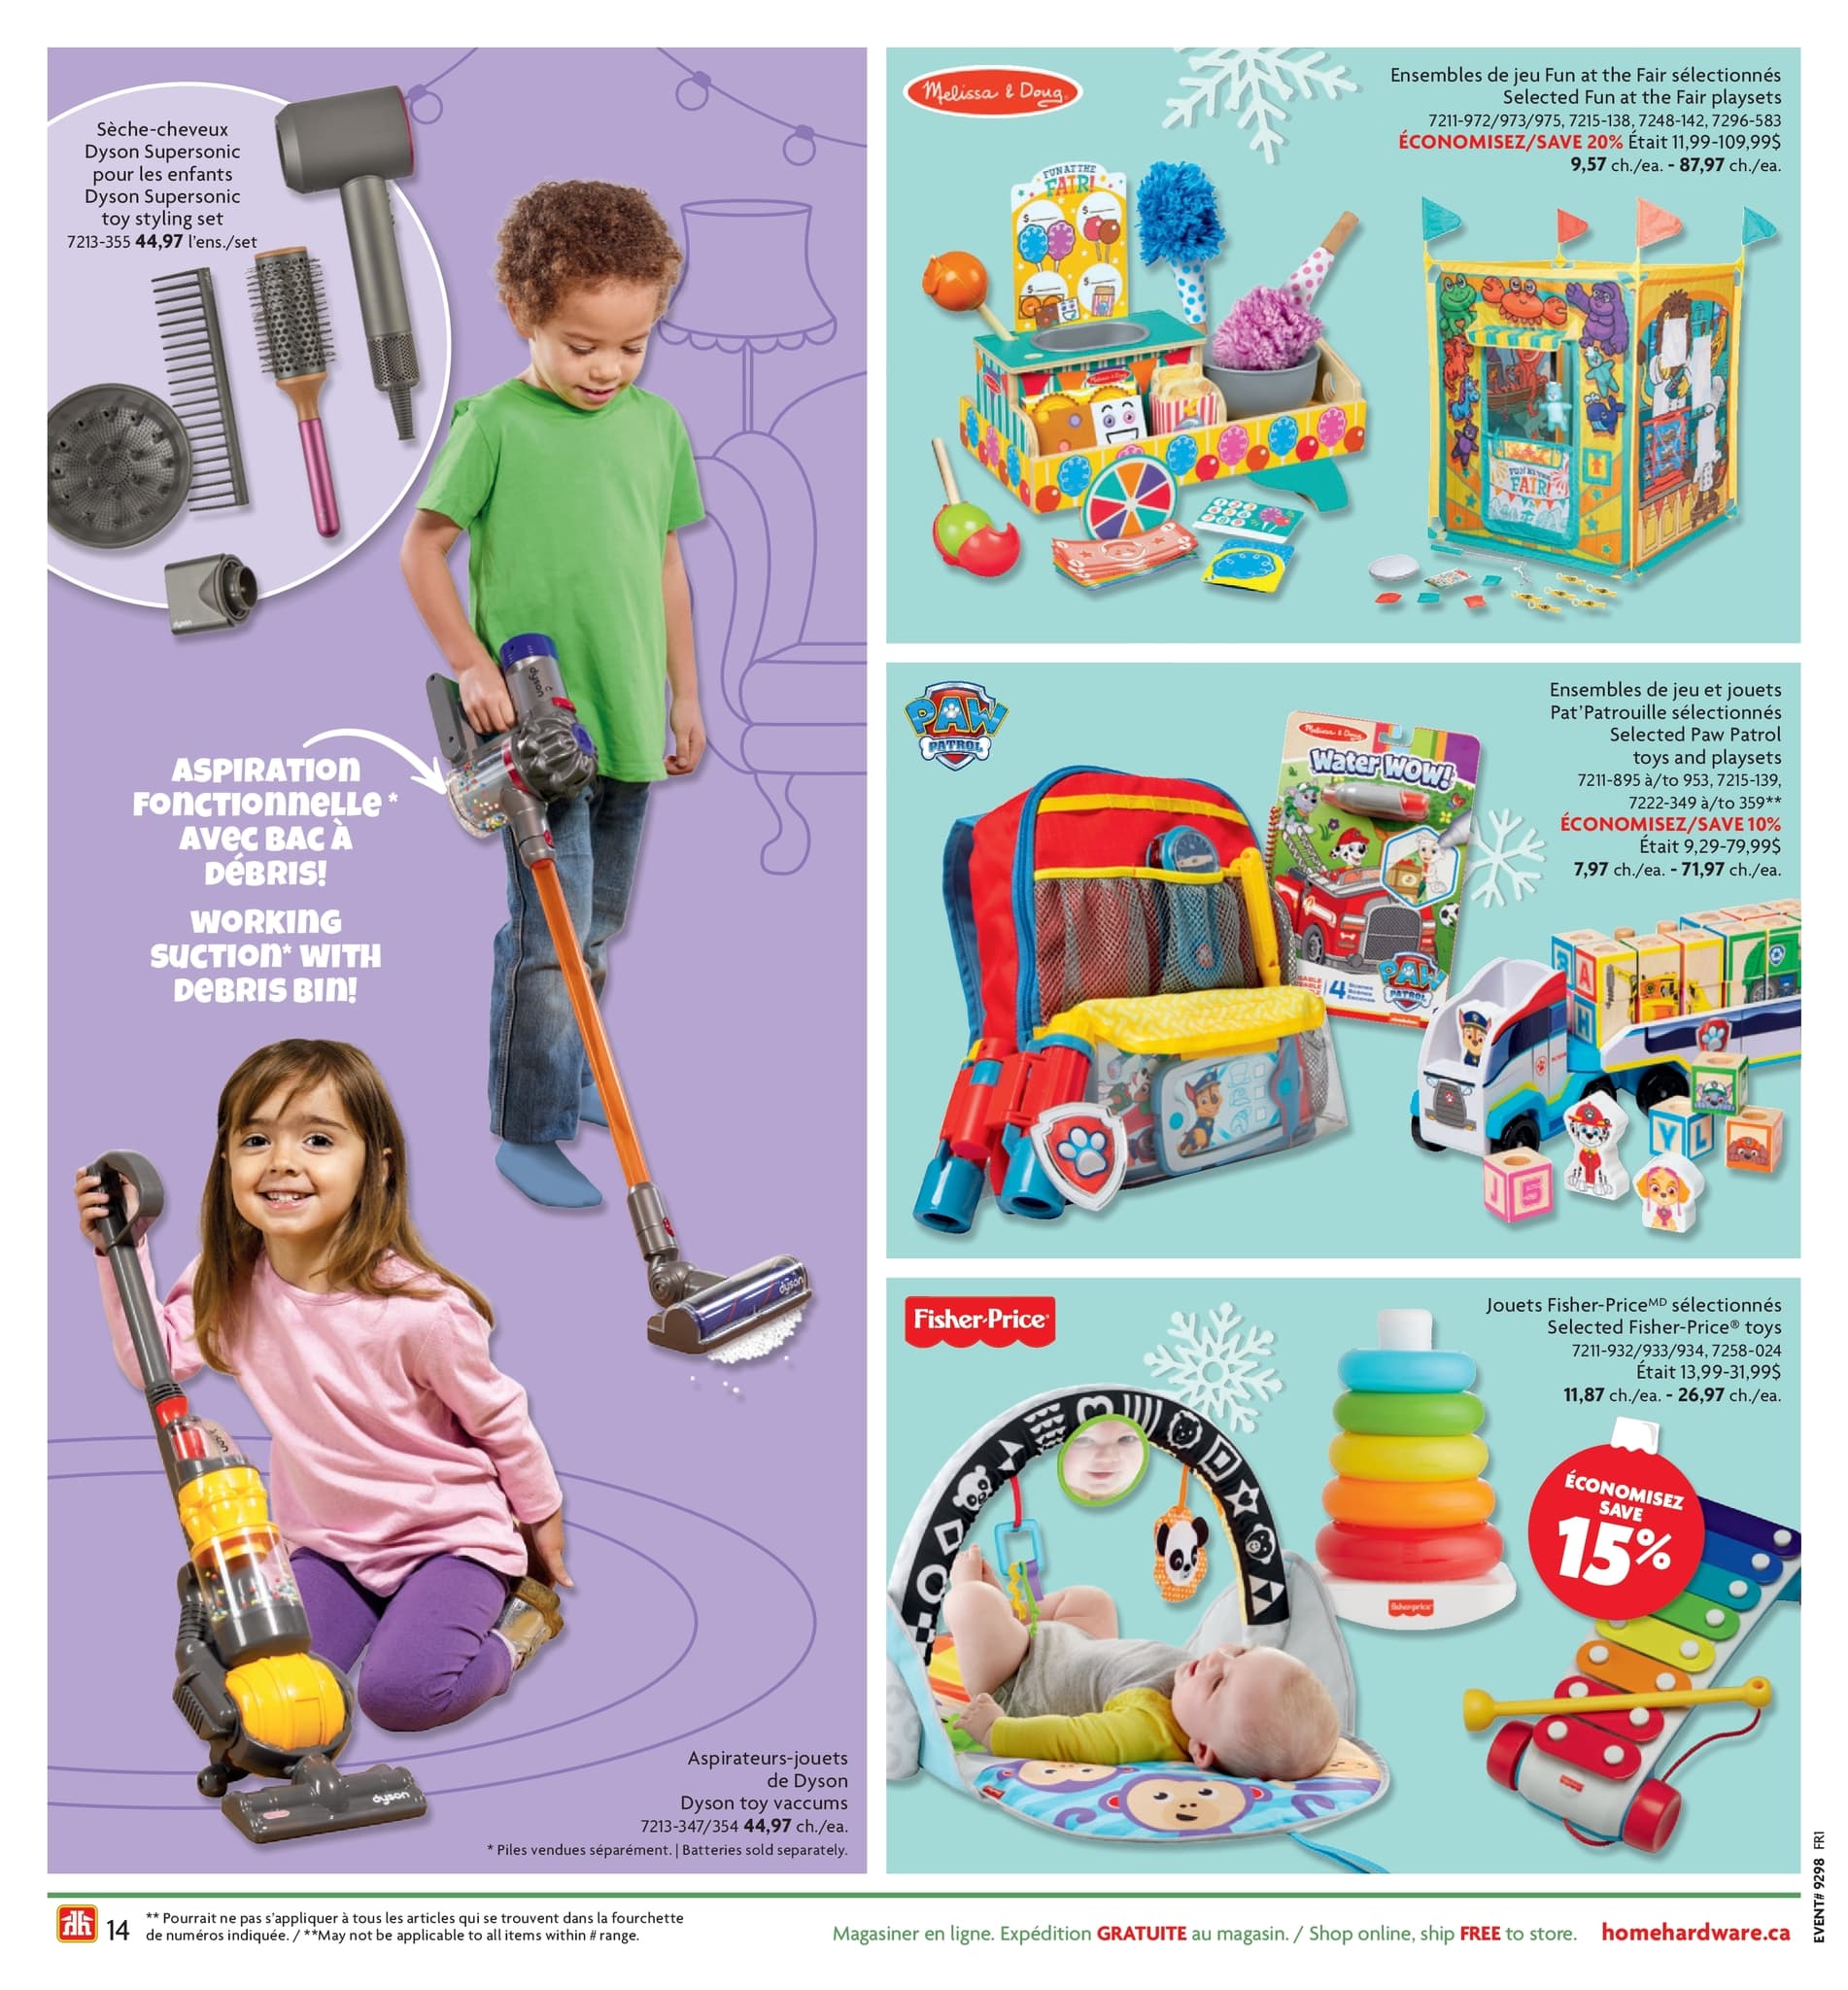 Home Hardware - Guide des cadeaux et des jouets des Fêtes - Page 14